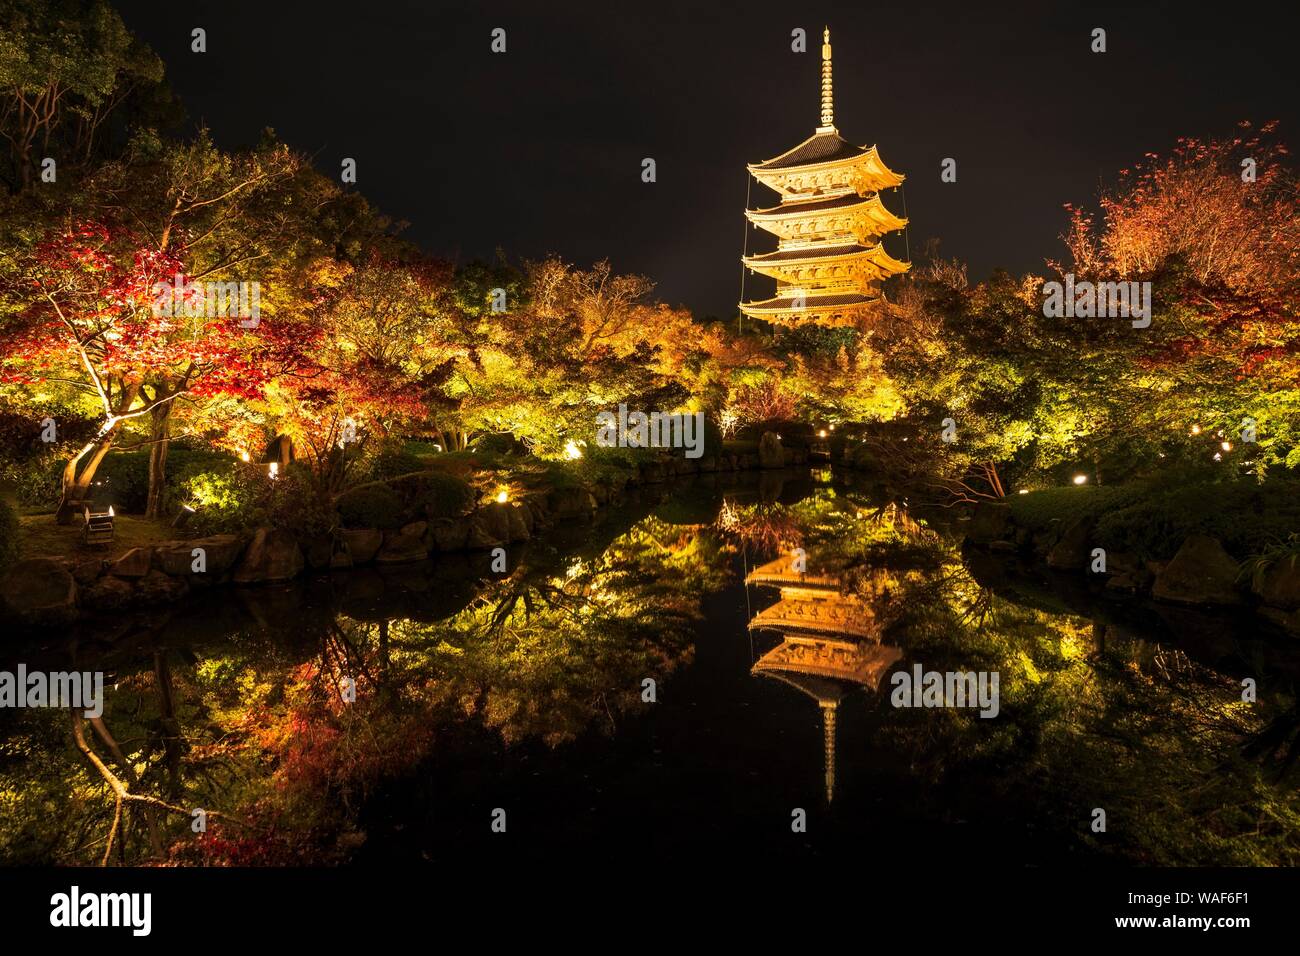 La pagoda de cinco pisos del templo Toji con el otoño colorido, iluminado en la noche, Kyoto, Japón Foto de stock